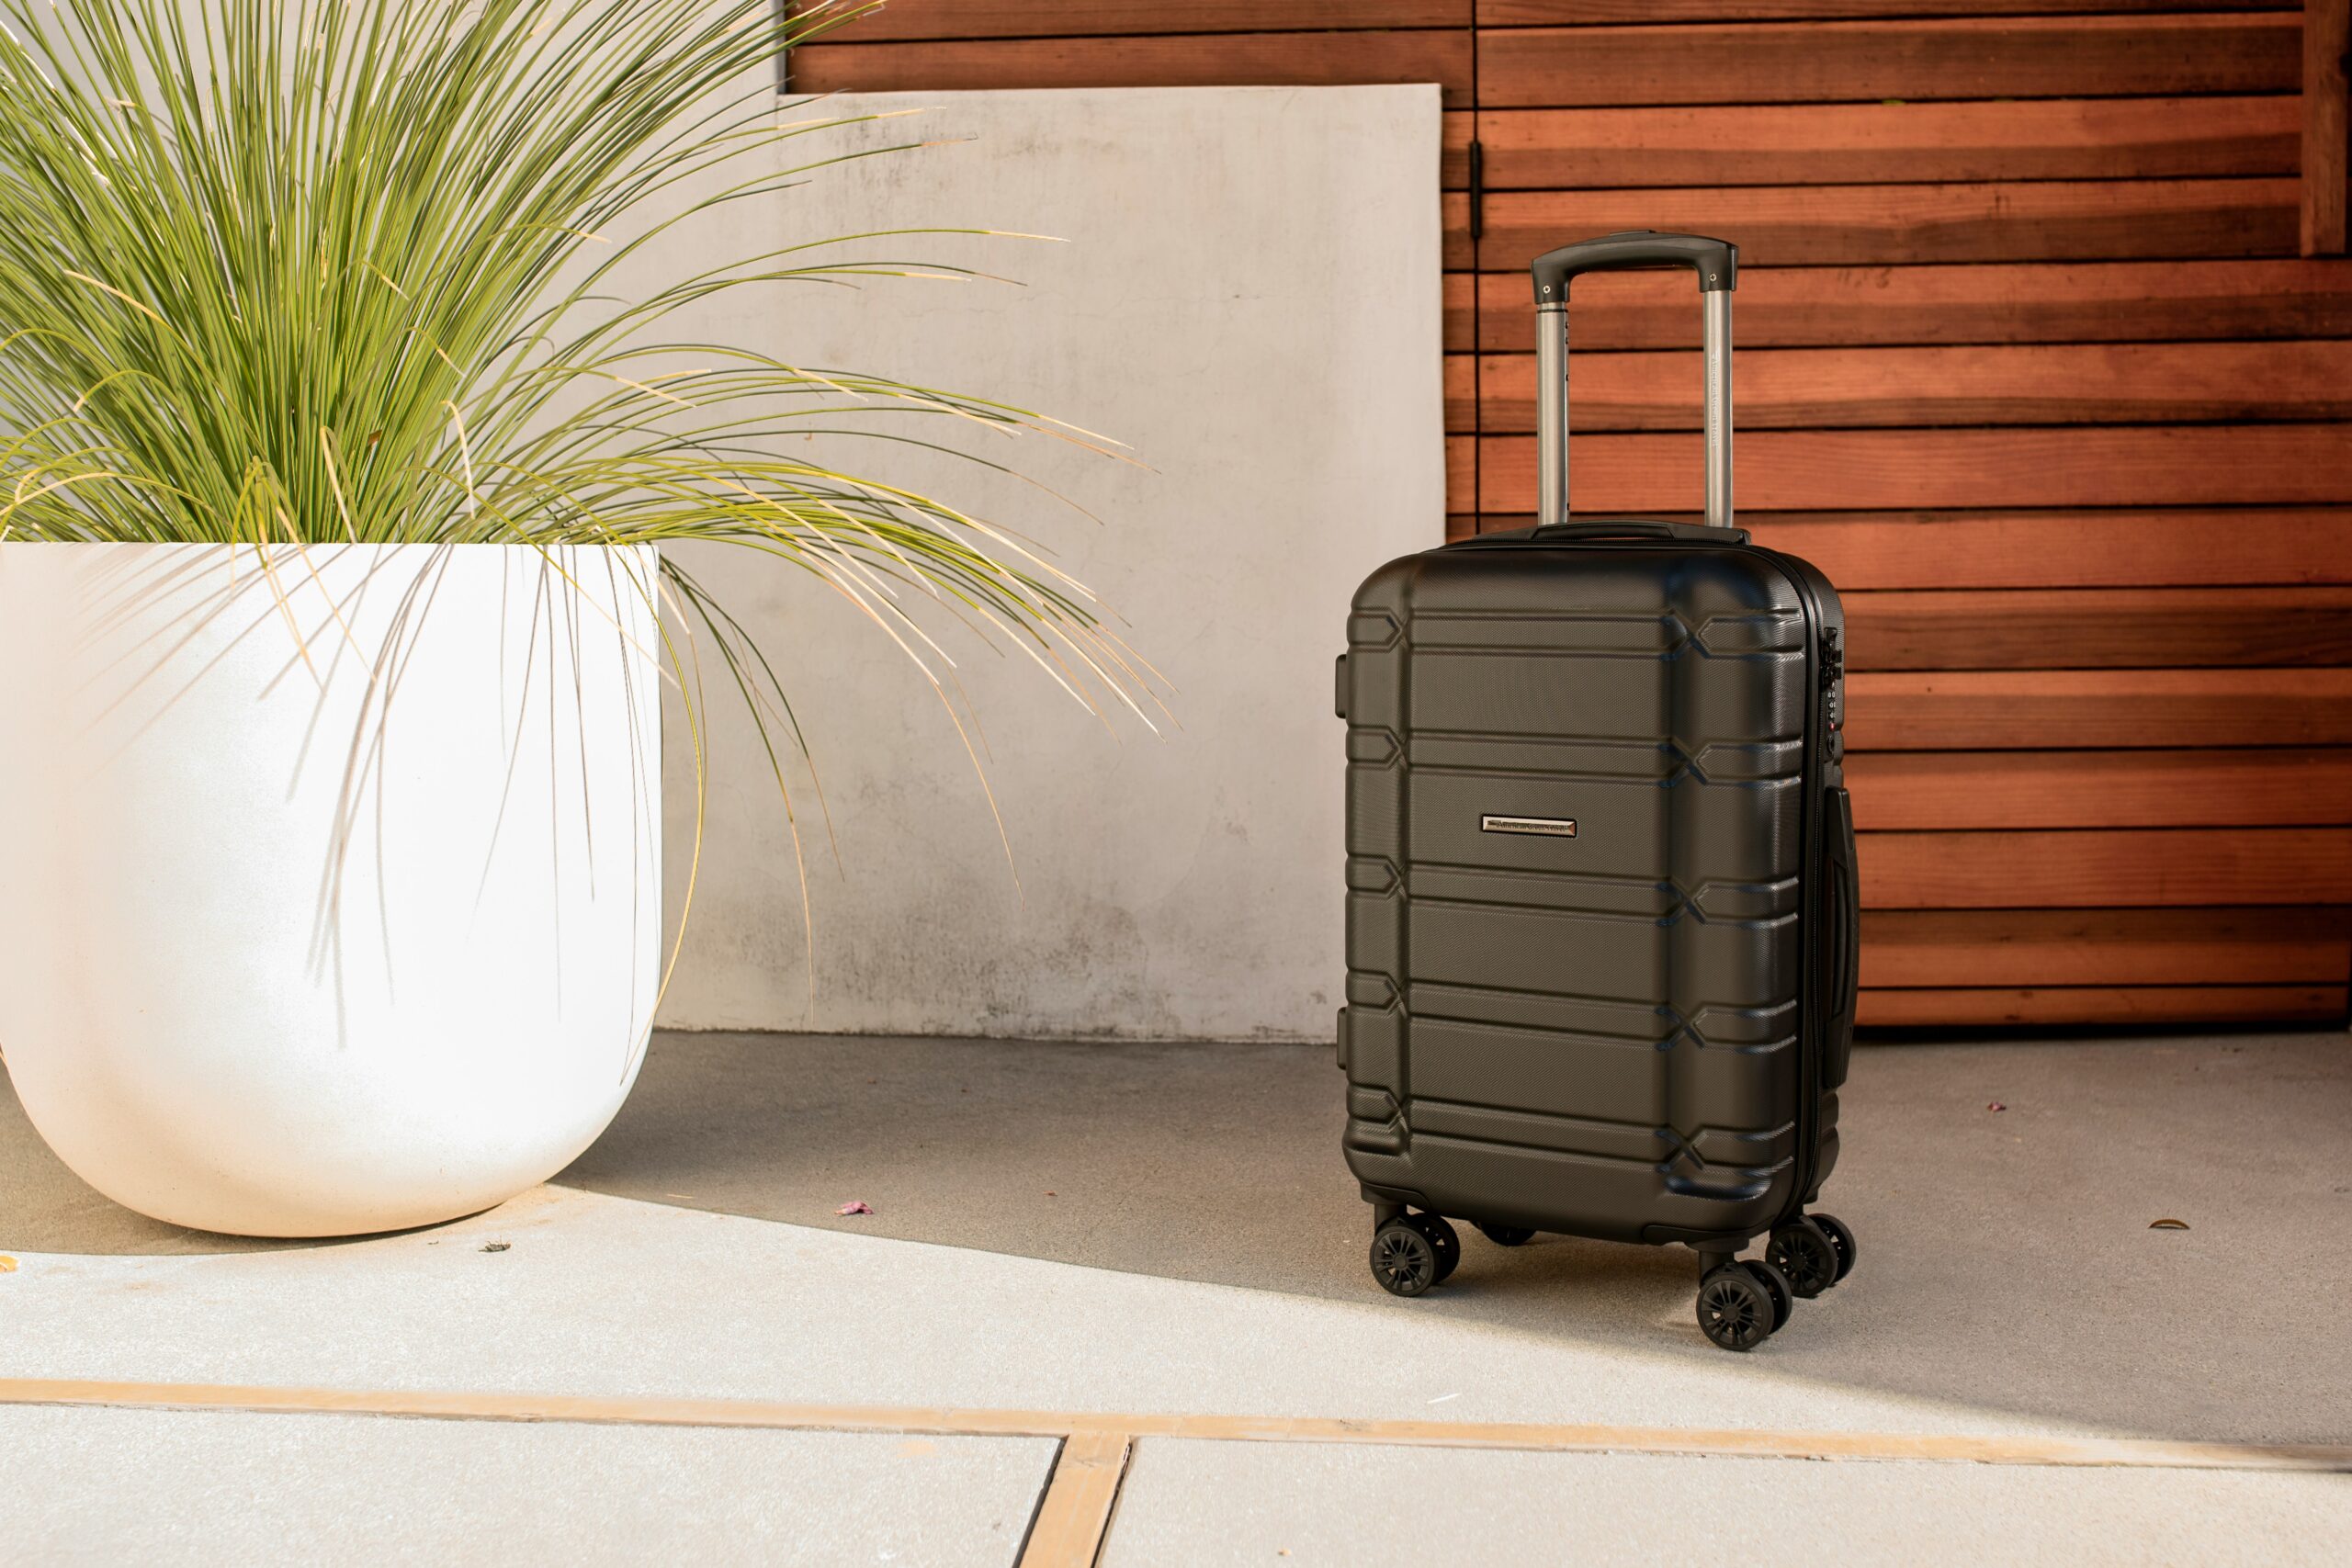 découvrez la taille idéale pour votre valise avec nos conseils et astuces pour voyager léger et organisé.